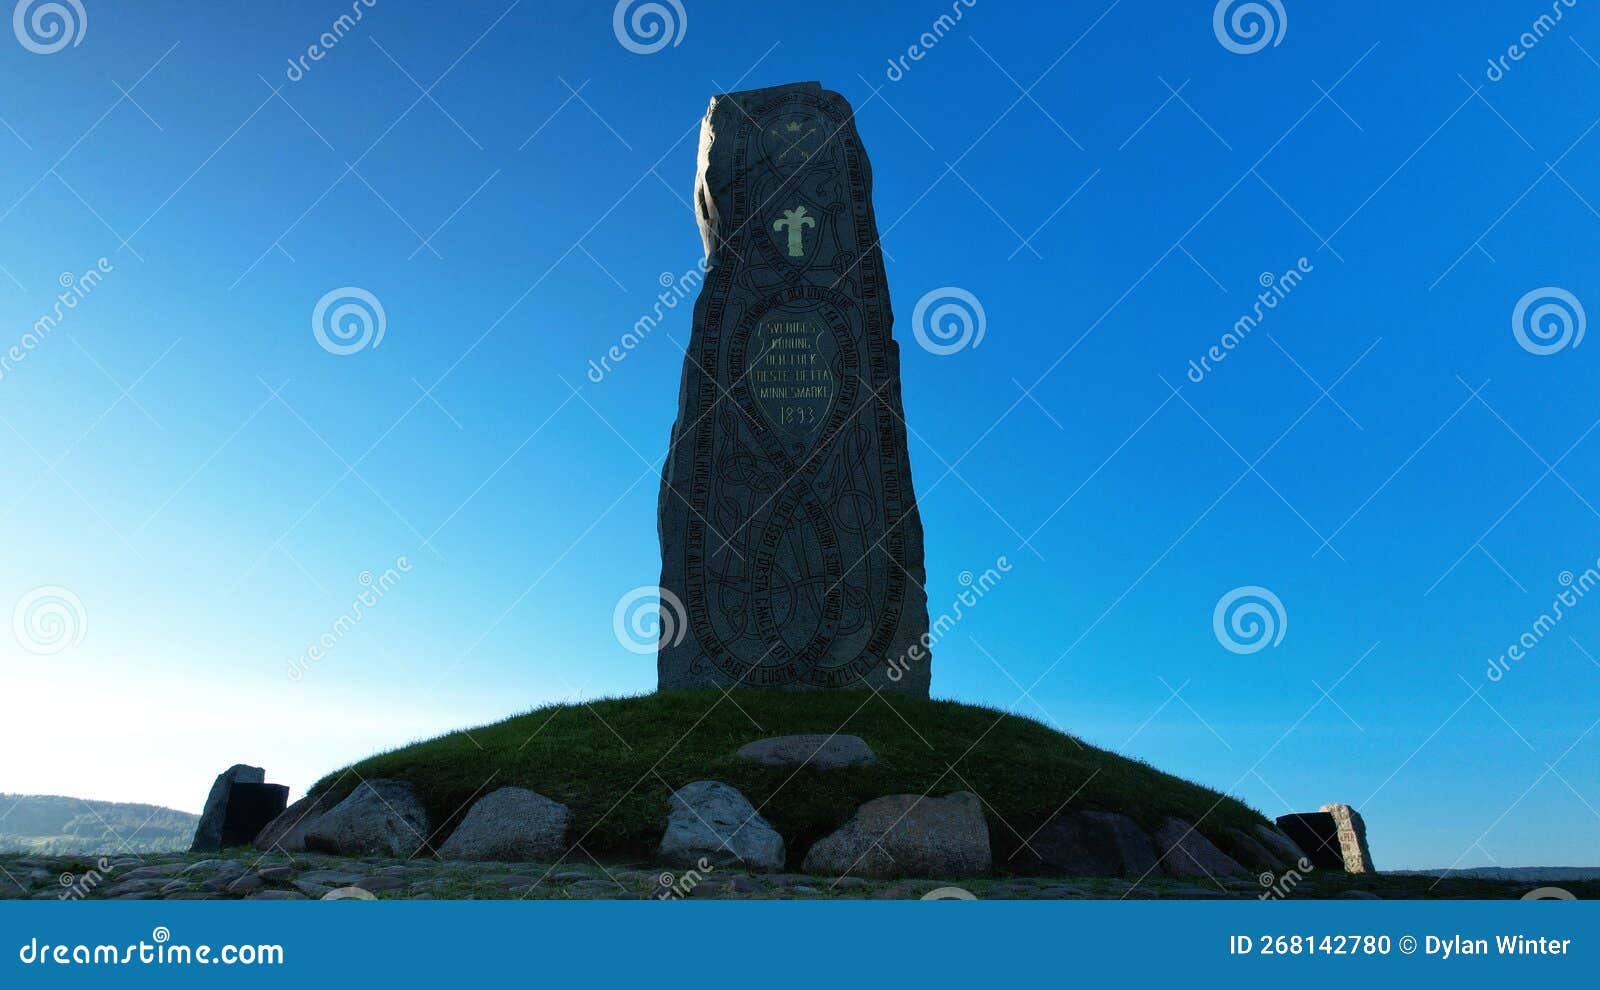 close up view vasa monument in rattvik dalarna sweden